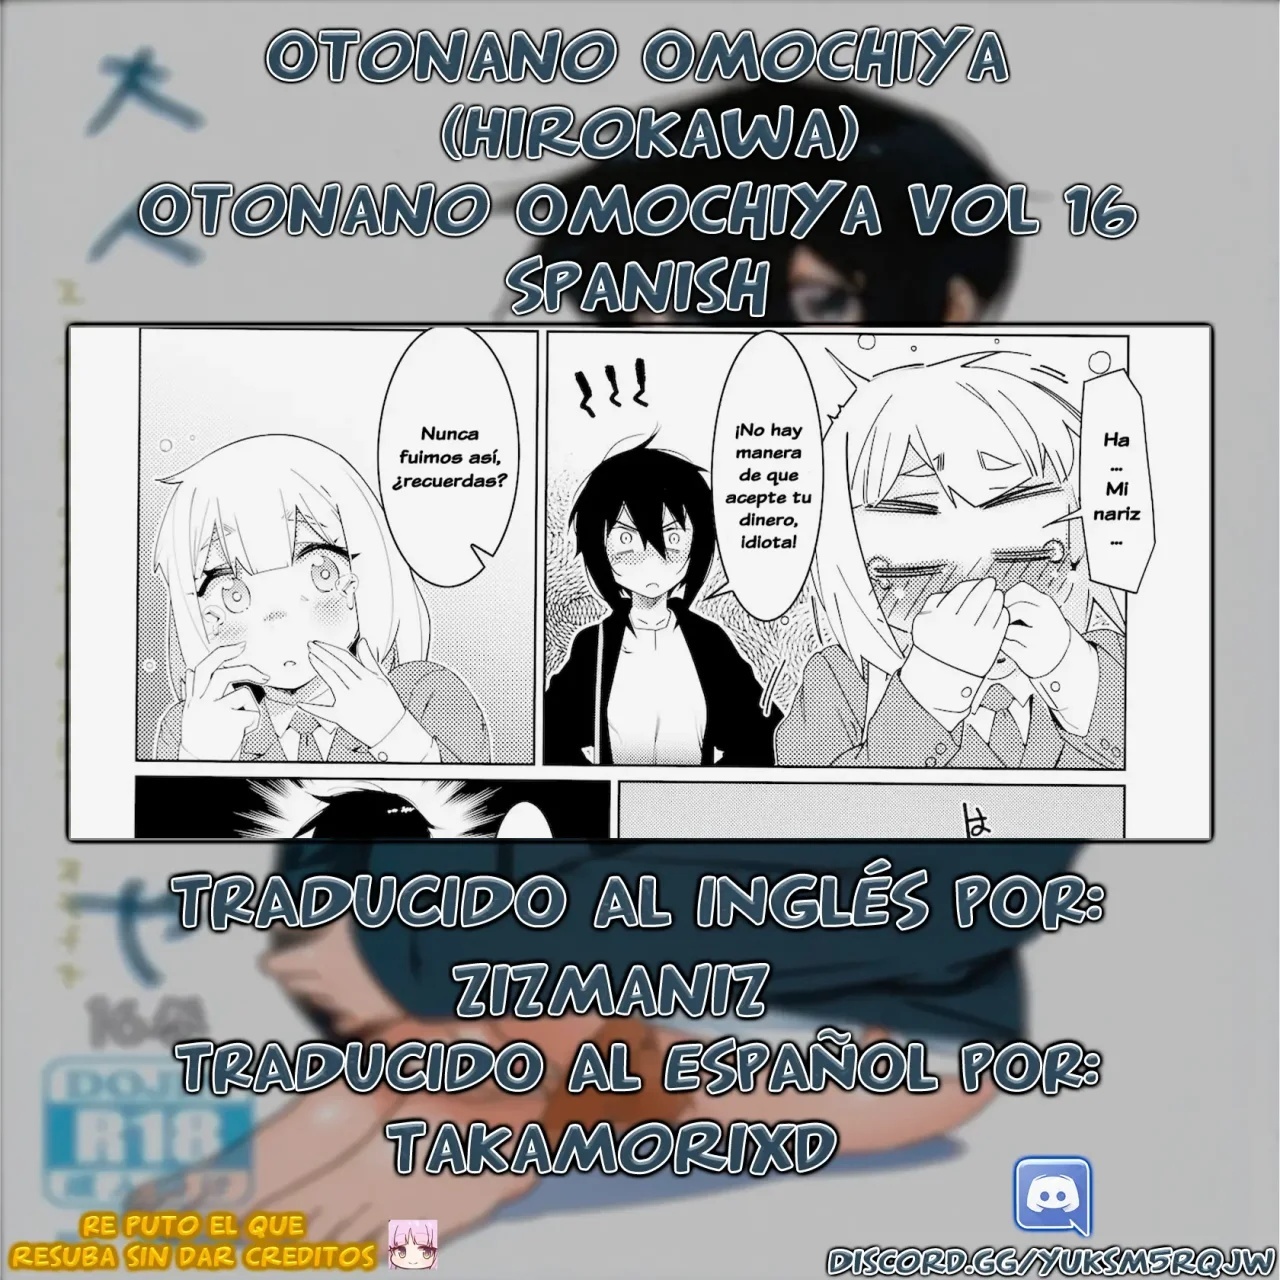 Otonano Omochiya 16 - 32